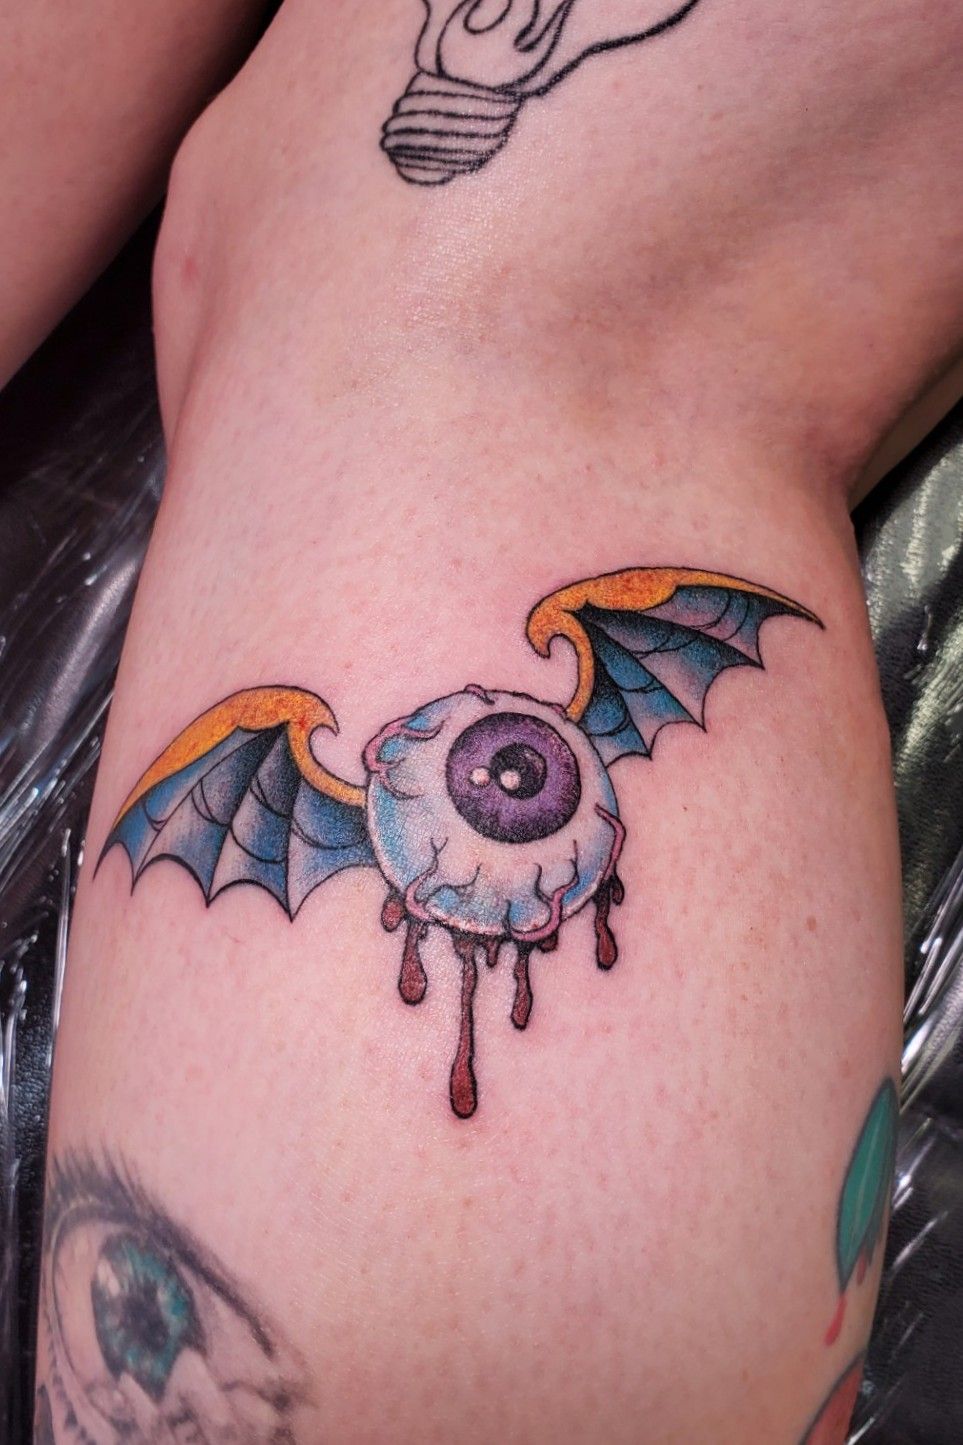 Winged Eye Tattoo by spongytweety on DeviantArt